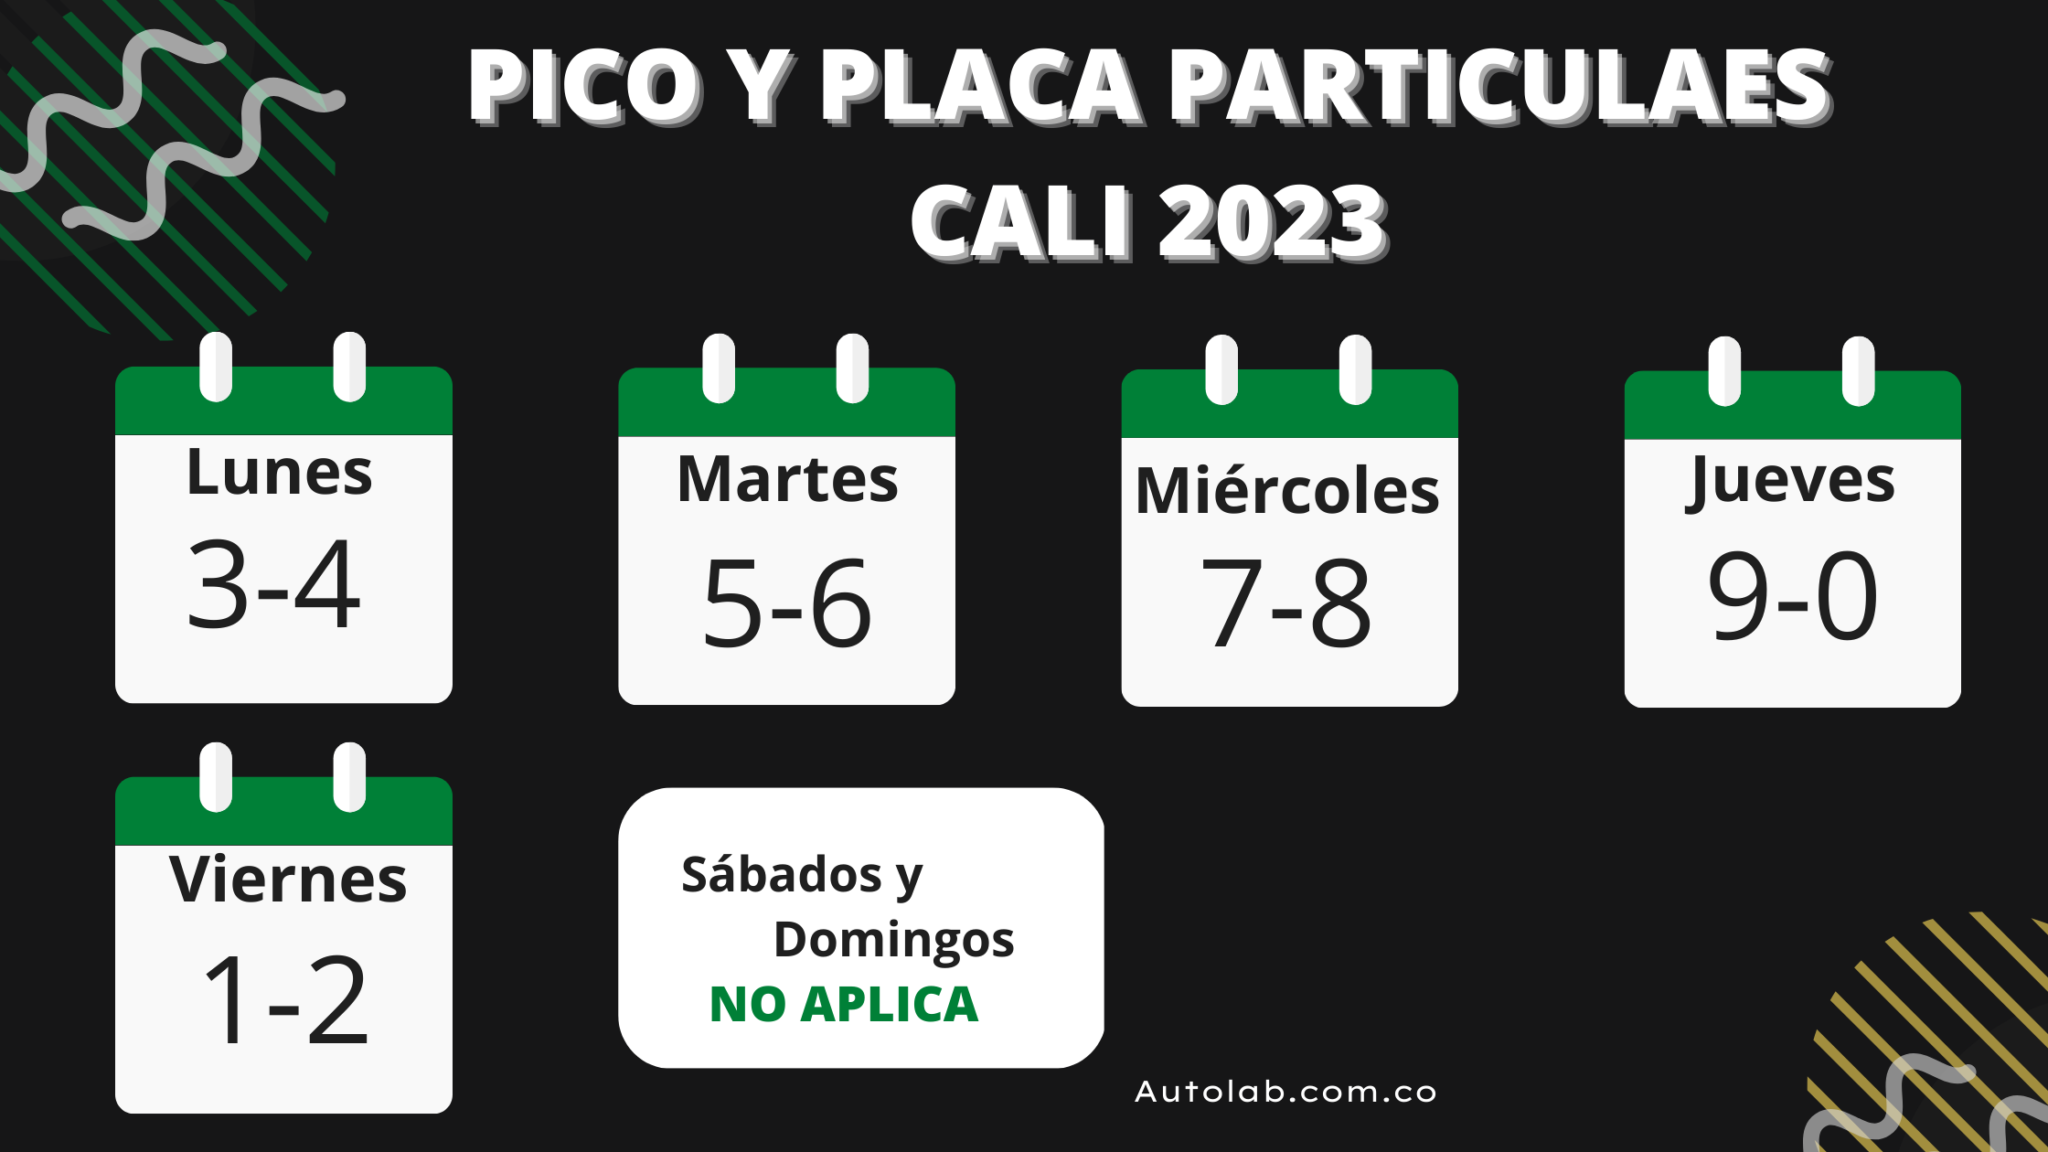 Pico y Placa en la ciudad de Cali mayo 2023 Autolab